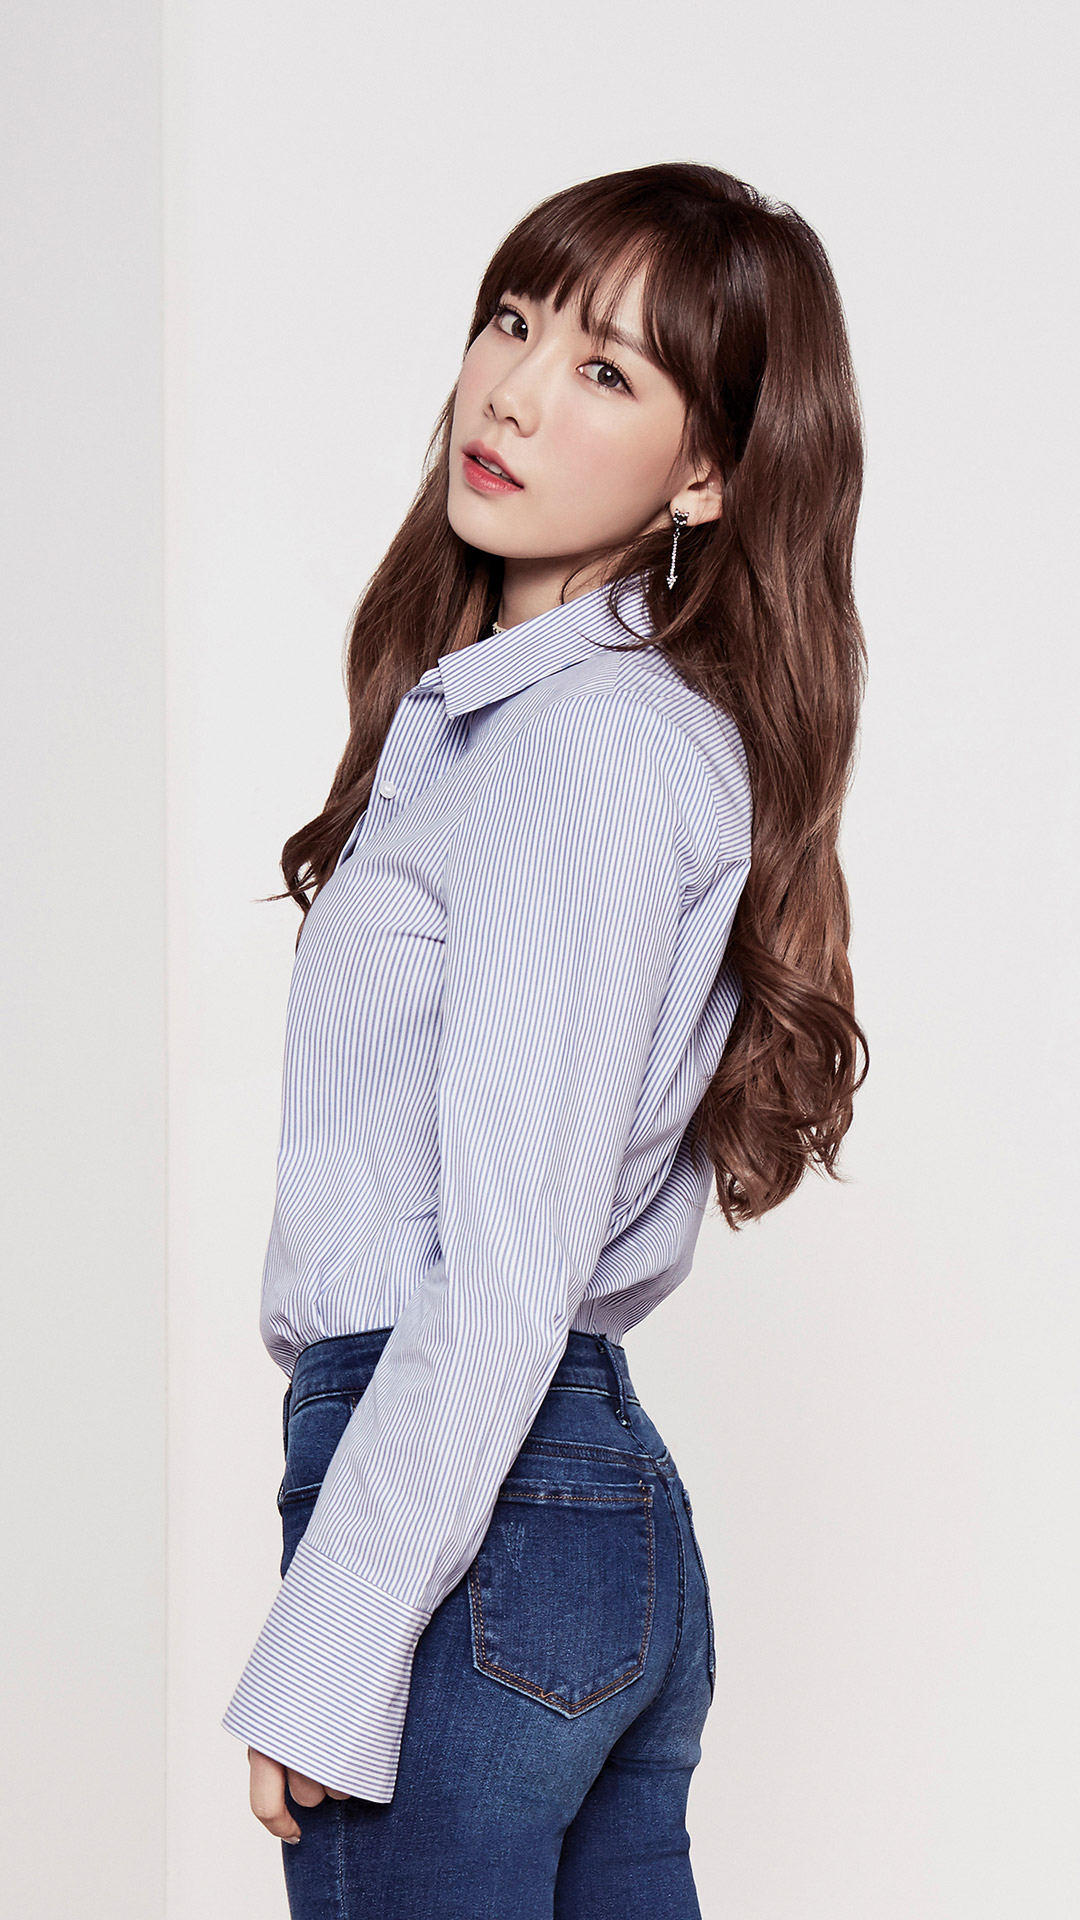 [OTHER][05-03-2014]TaeTiSeo trở thành người mẫu mới cho thương hiệu thời trang "MIXXO" - Page 19 32950022005_f7ec03fcbe_o